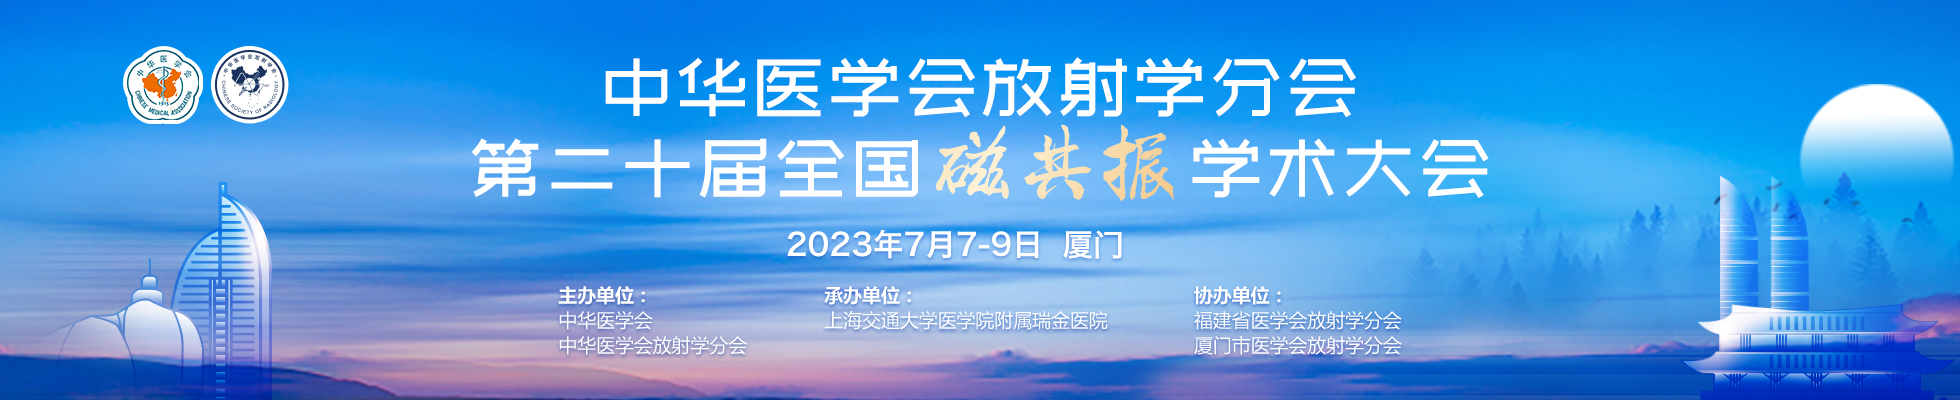 中华医学会放射学分会第二十届全国磁共振学术大会